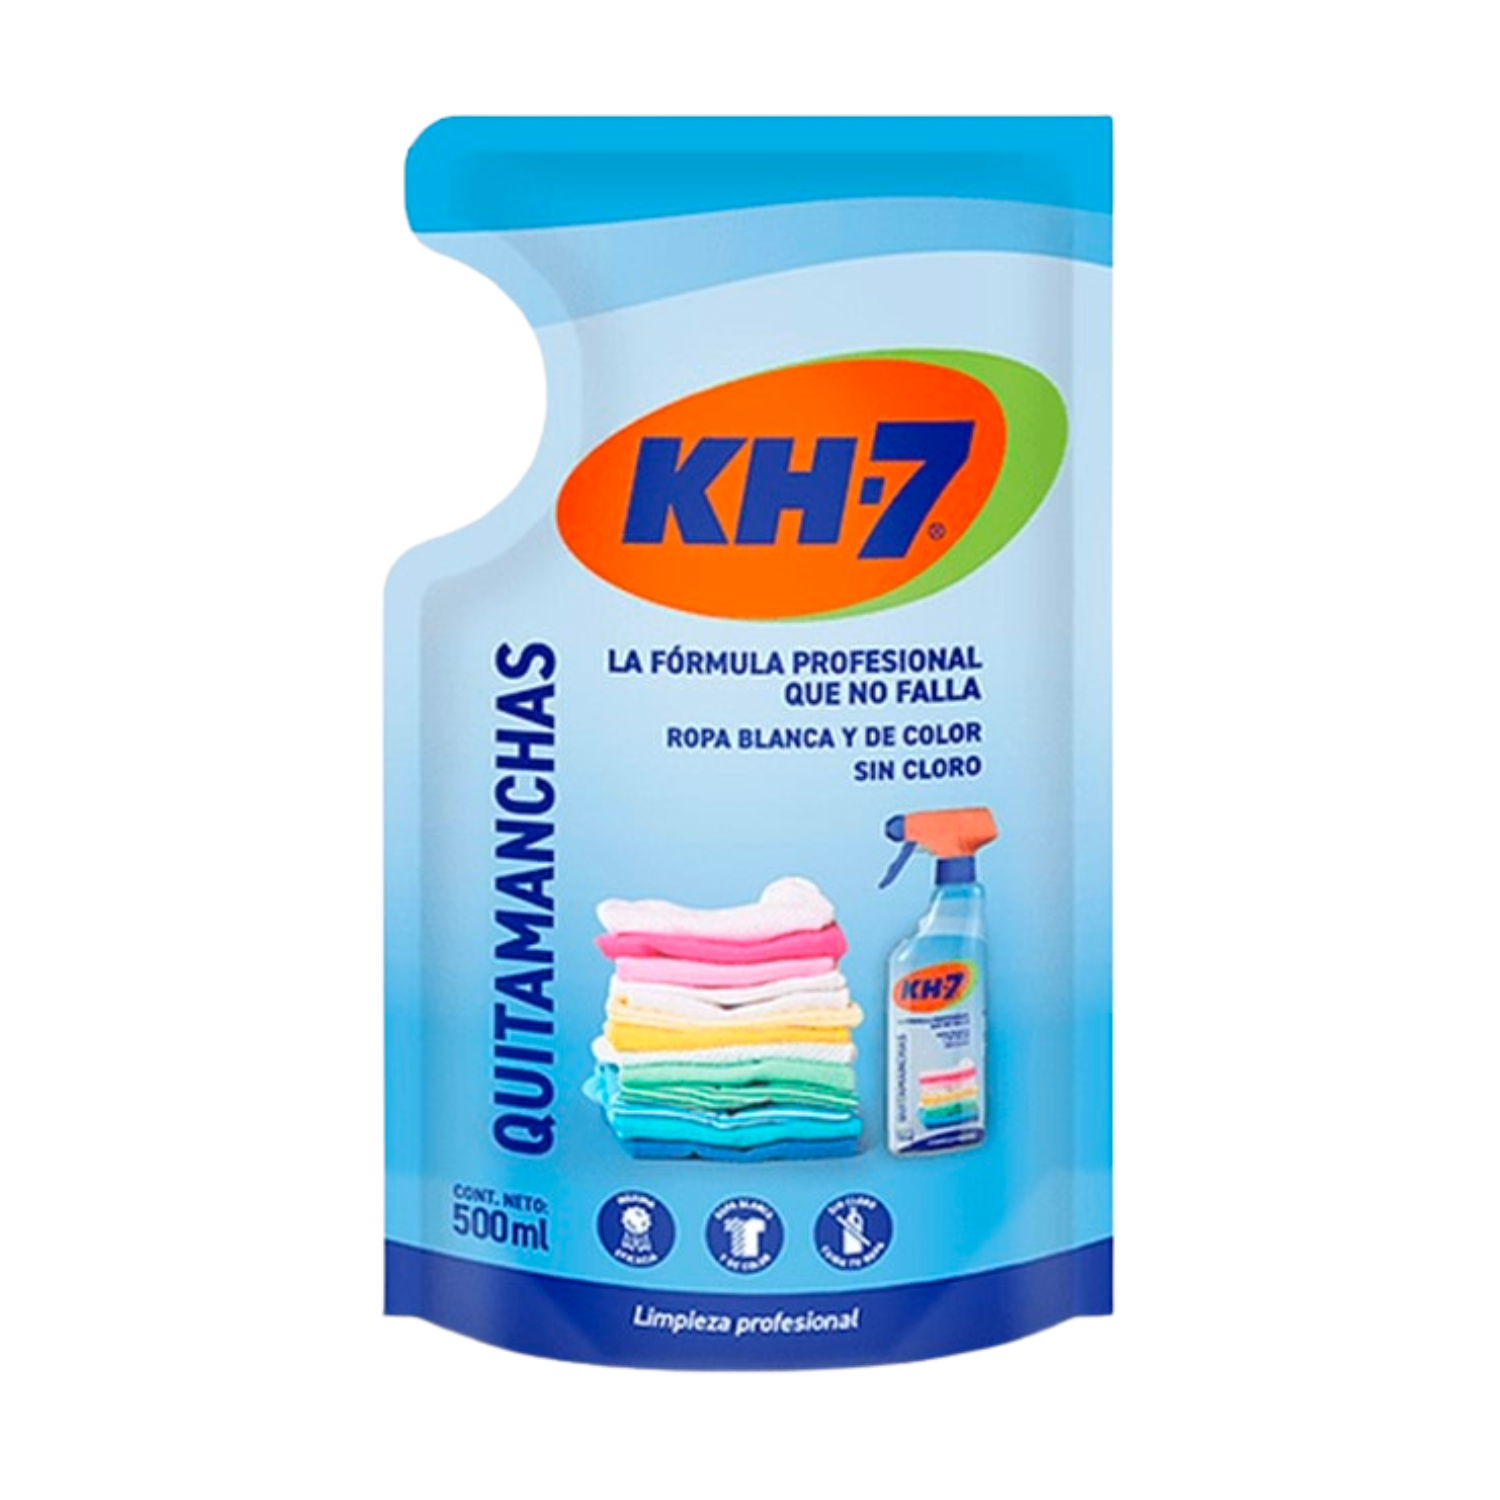 Kh7 – Regalos y Muestras gratis